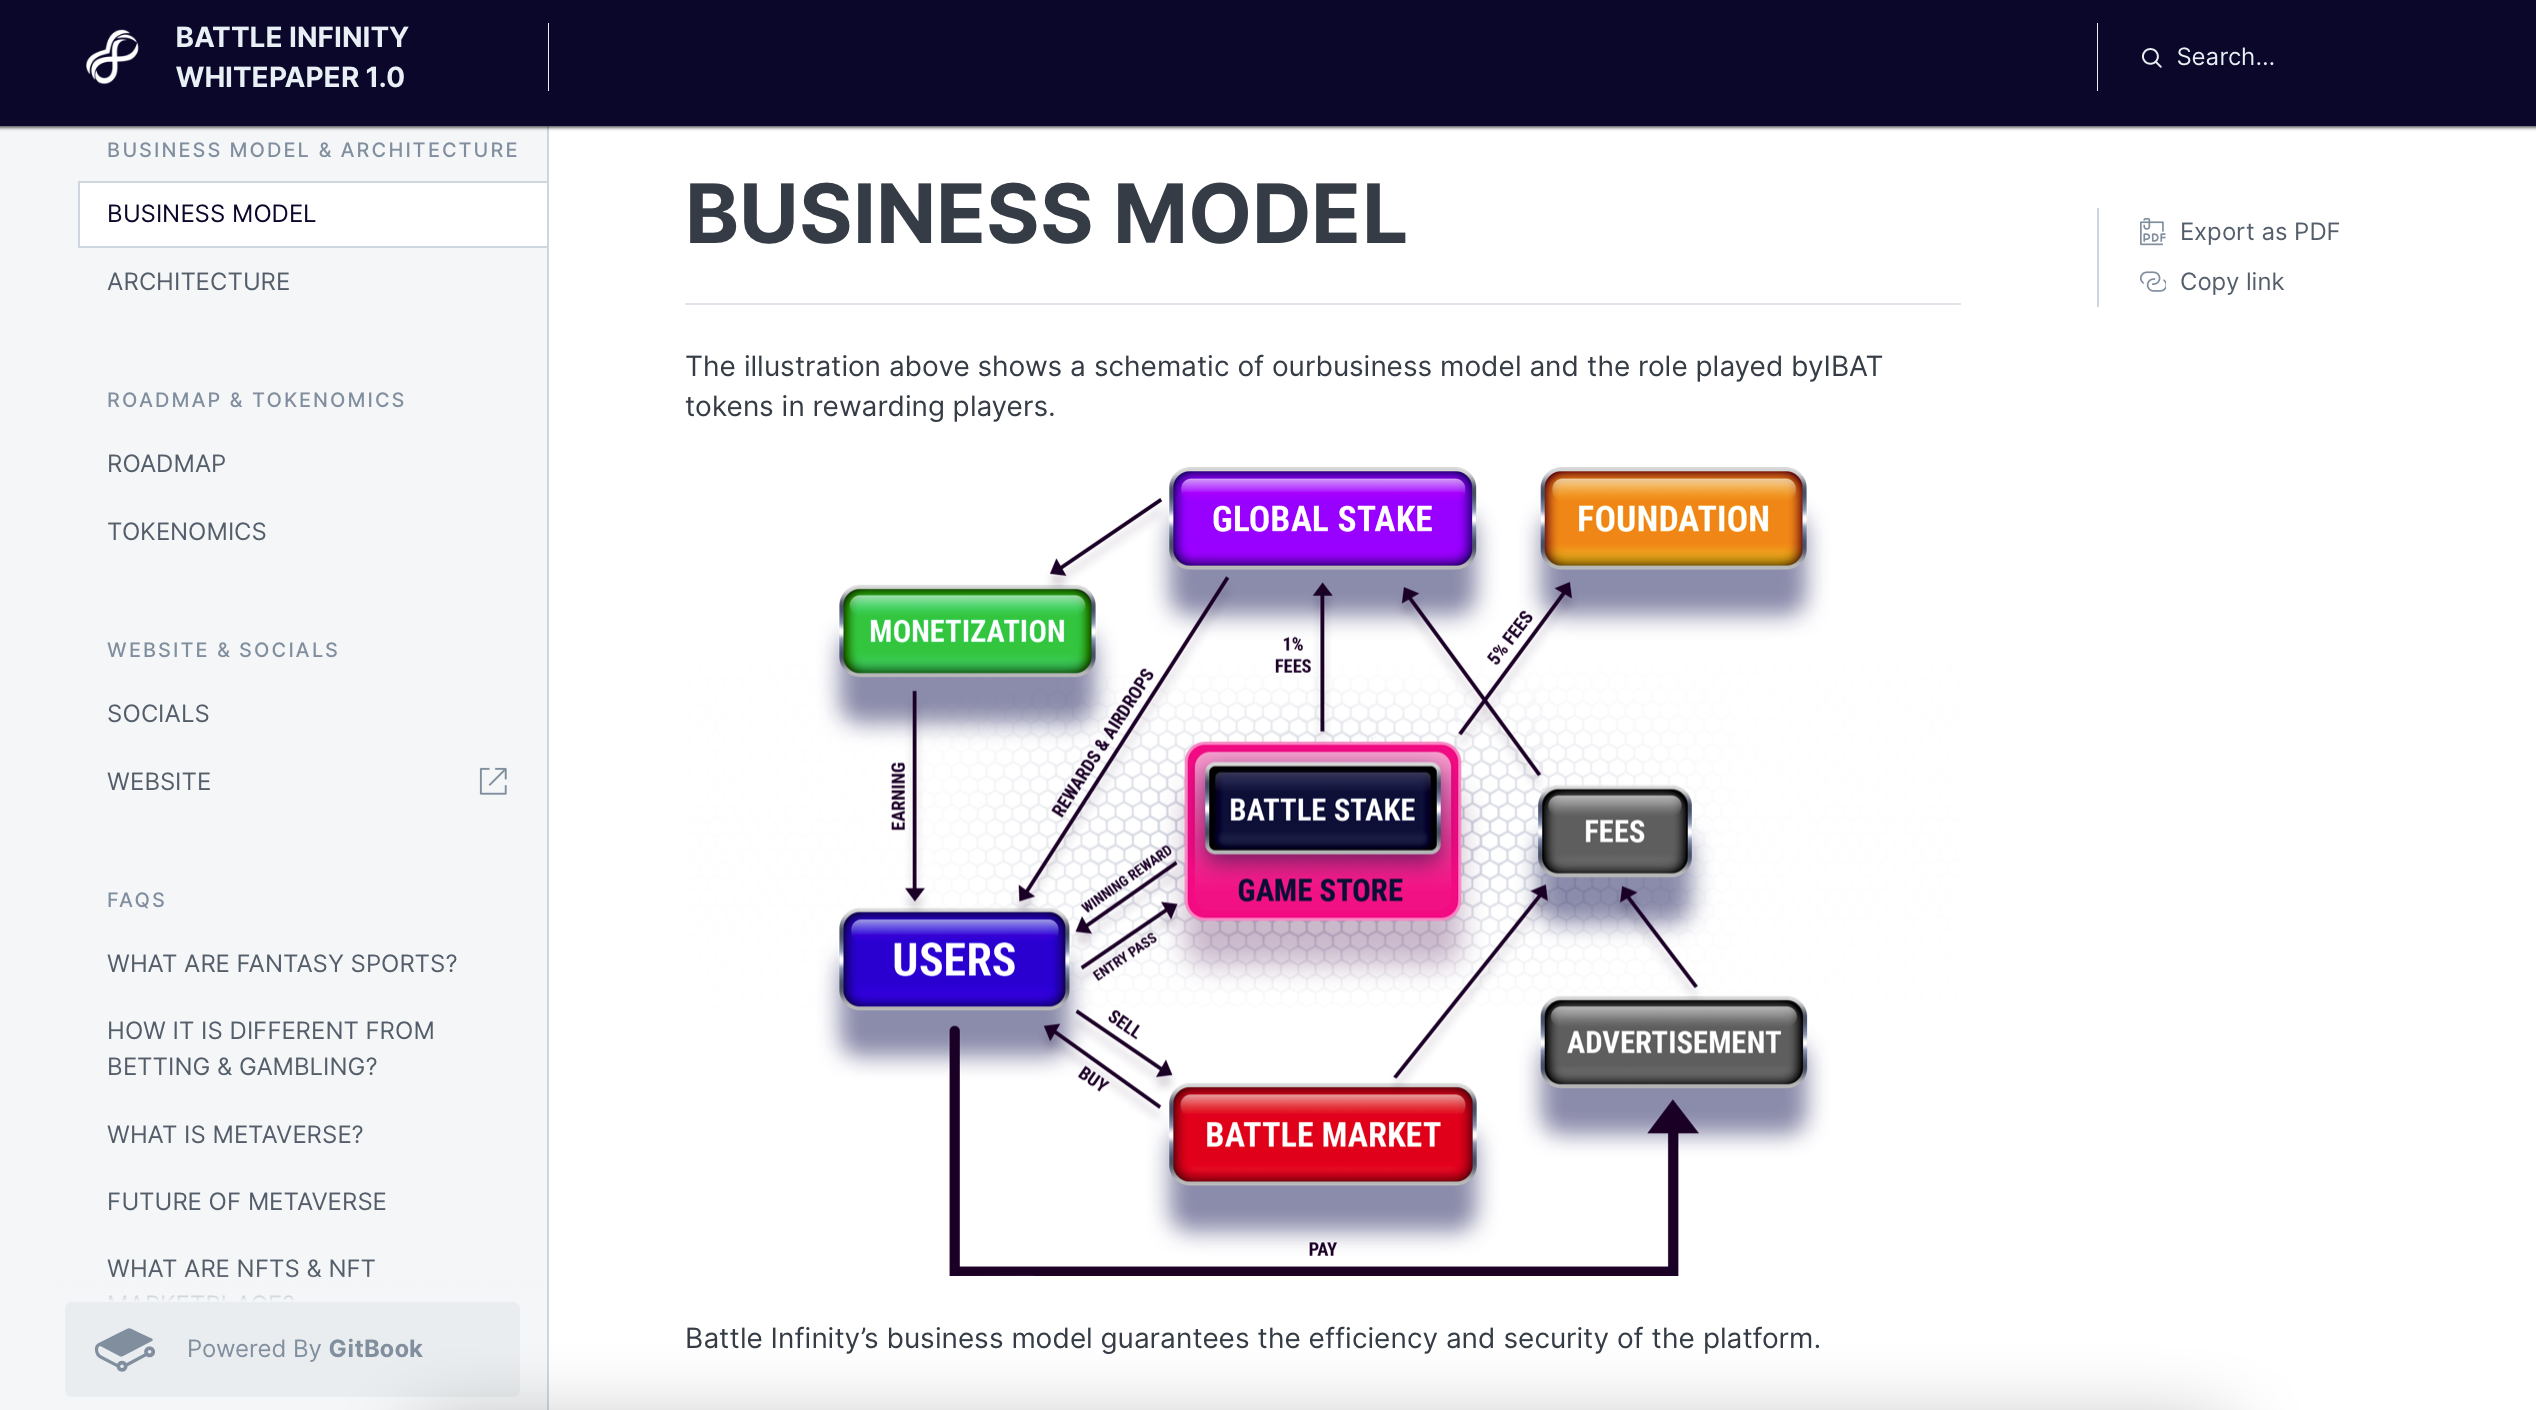 Business Model IBAT